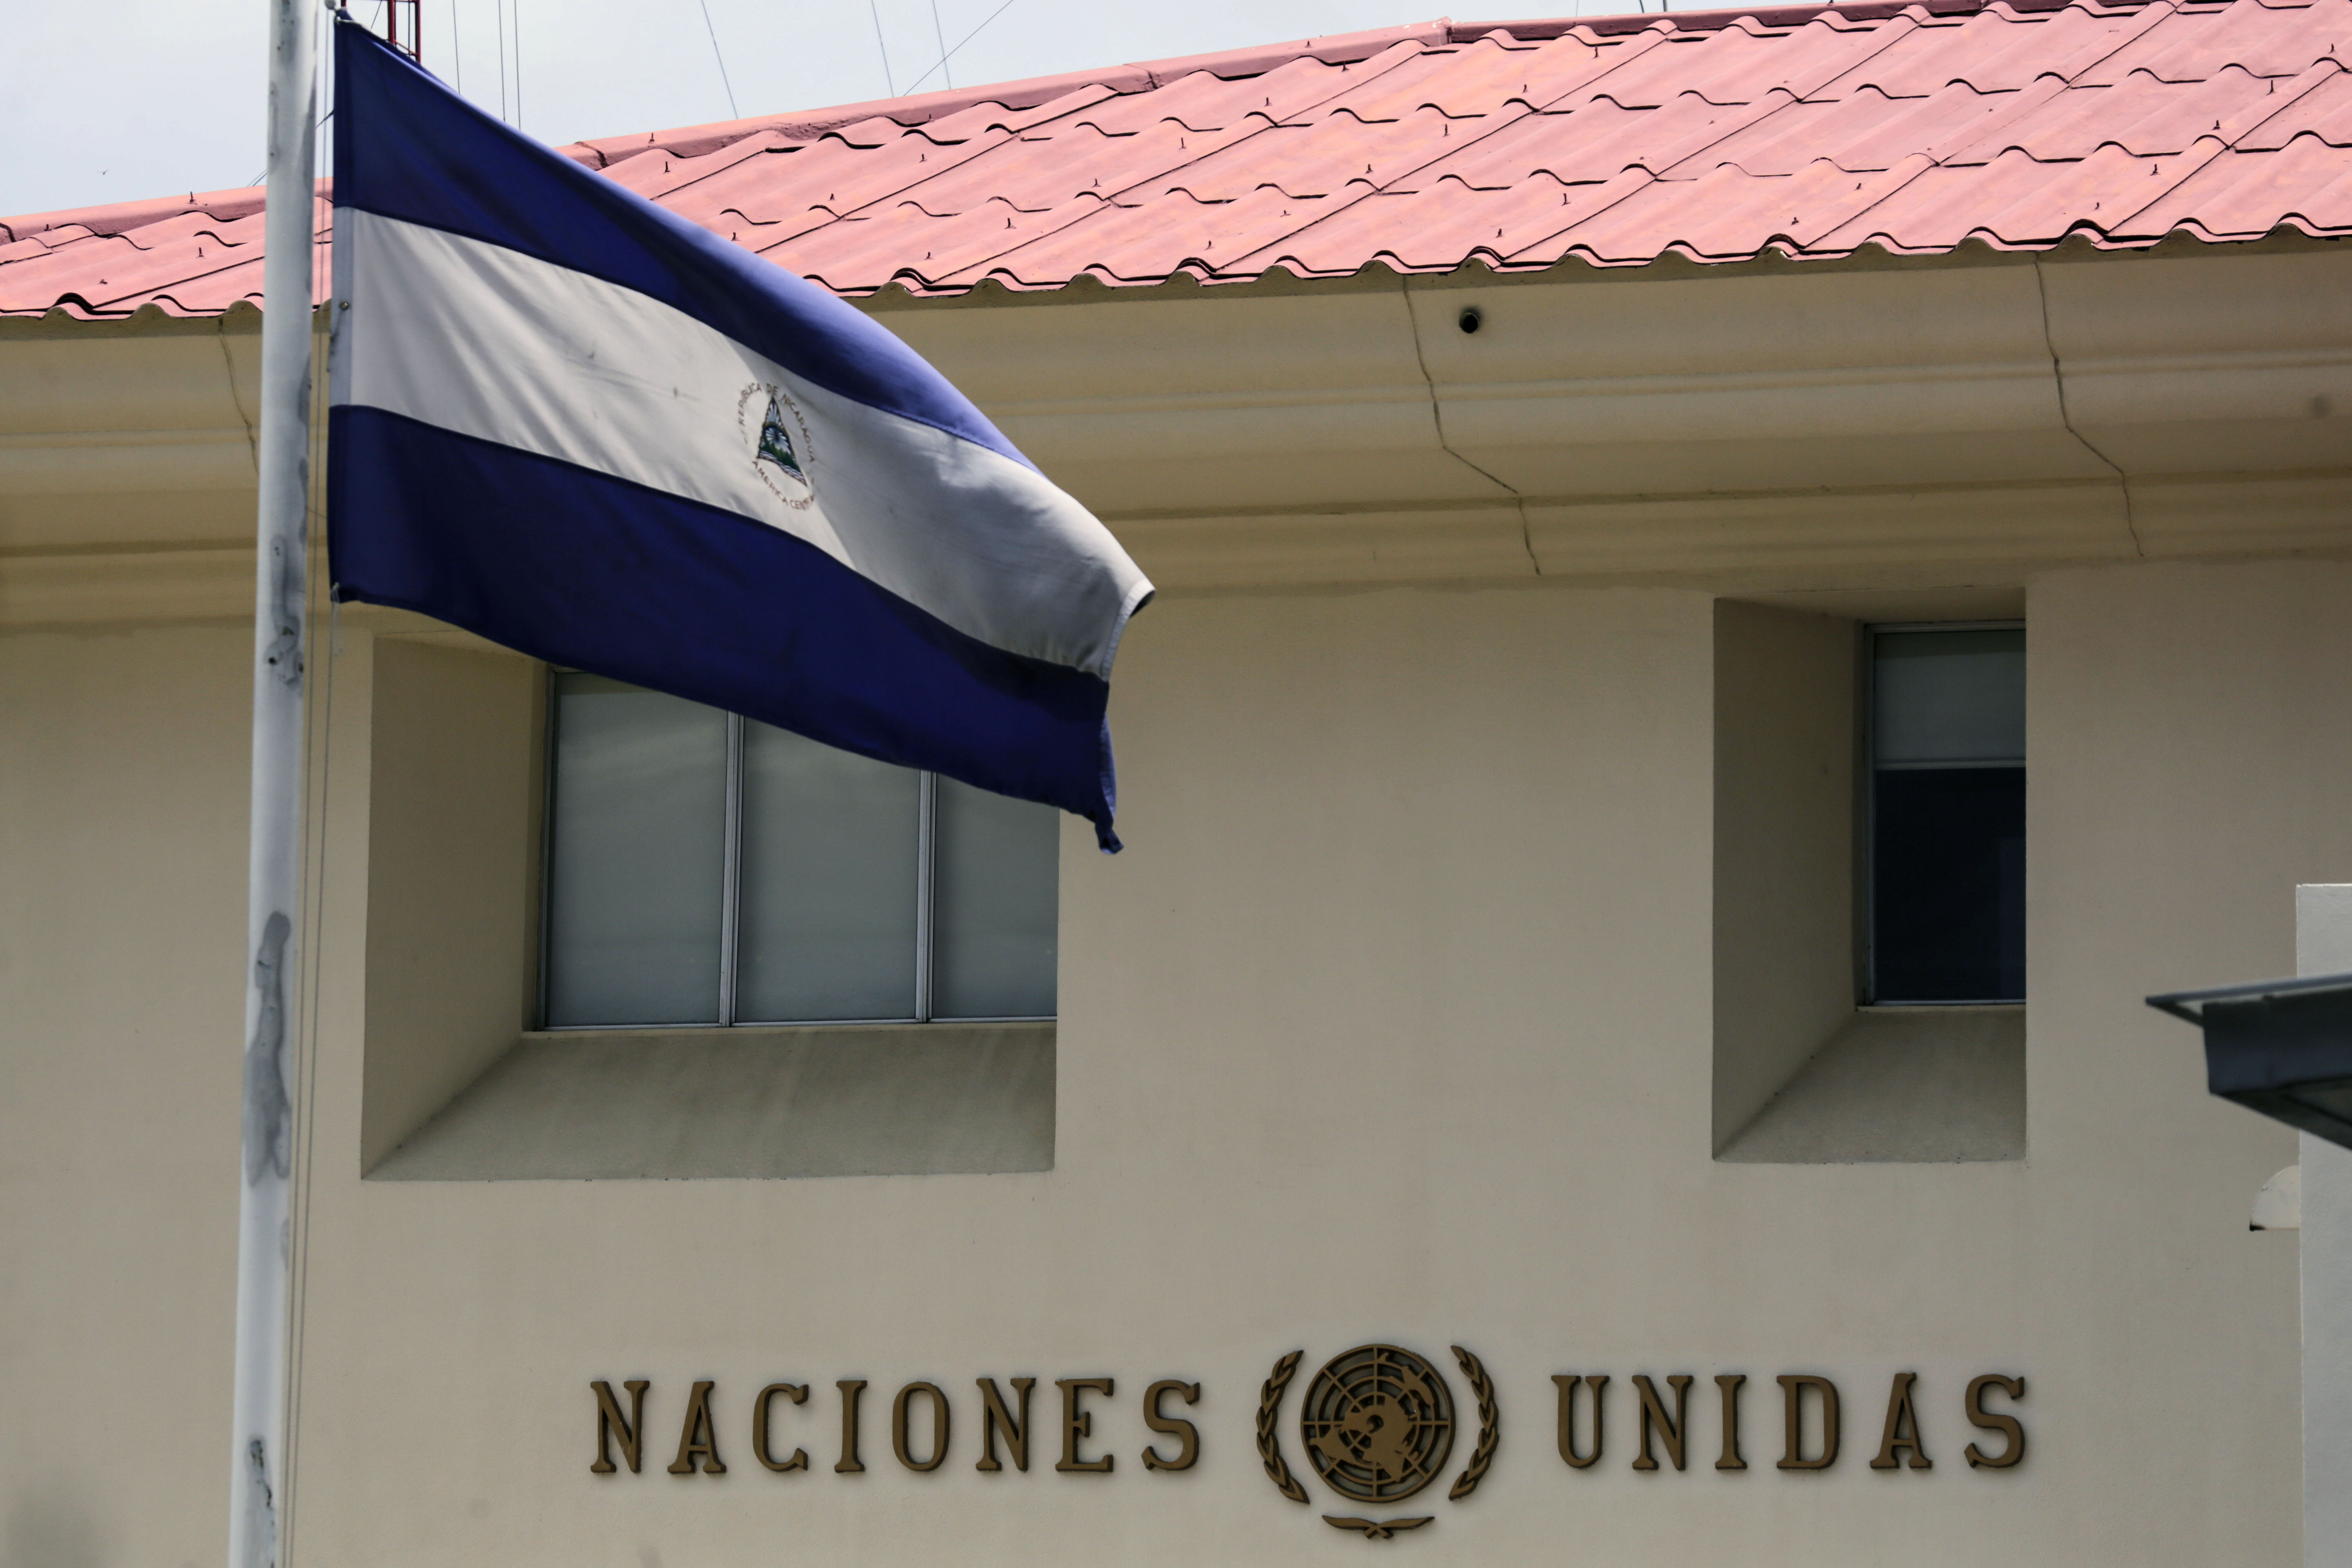 Aps ordem do governo de Daniel Ortega, Misso do Alto Comissariado dos Direitos Humanos da ONU abandona a Nicargua neste sbado. Foto: INTI OCON / AFP (Foto: INTI OCON / AFP)